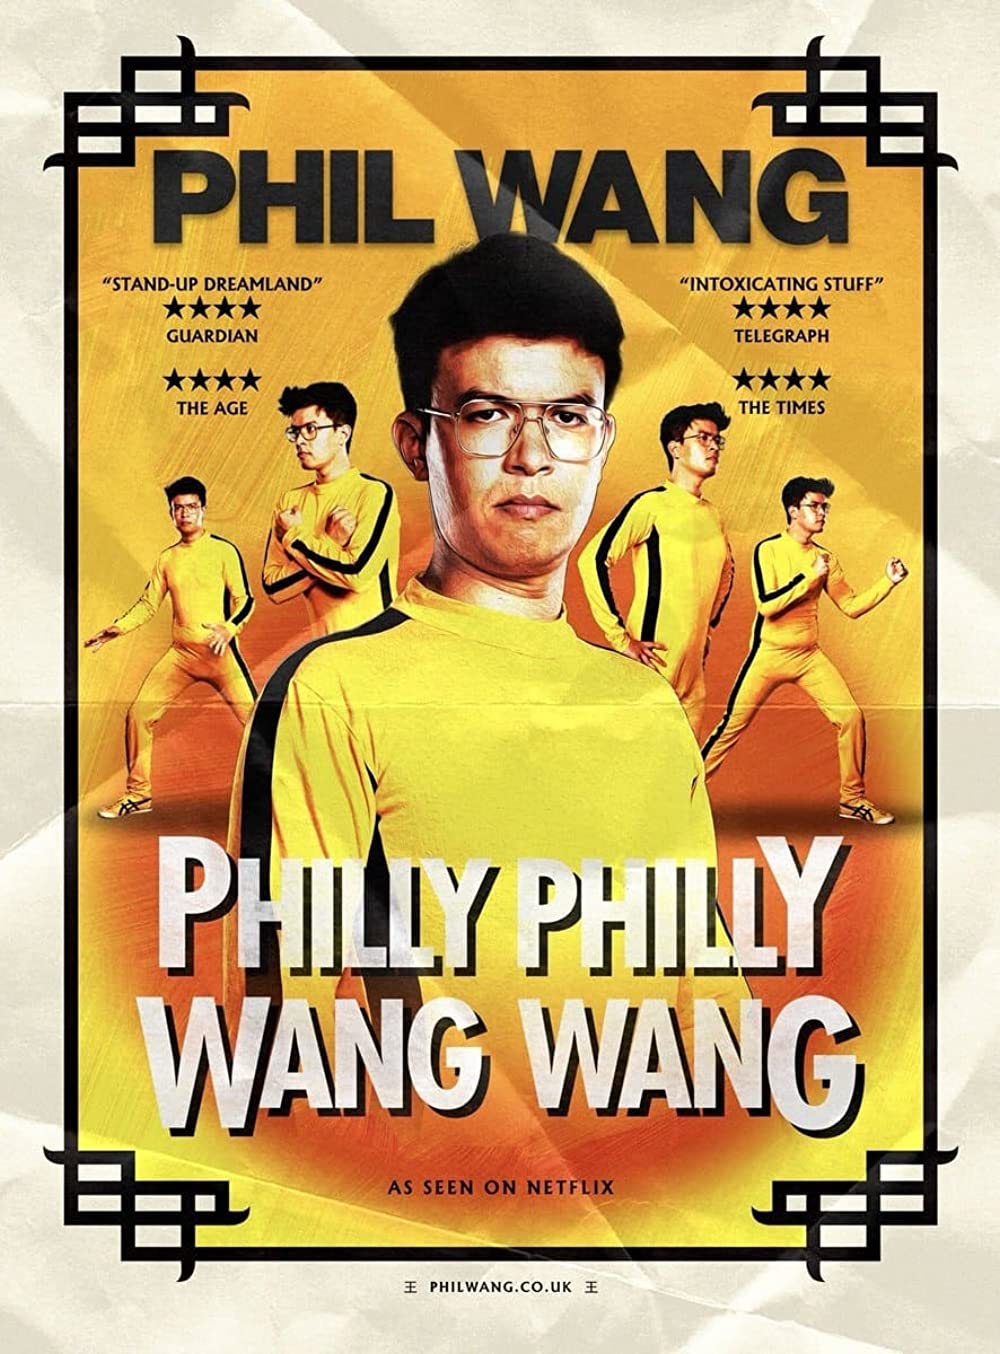 ดูหนังออนไลน์ Phil Wang Philly Philly Wang Wang (2021) ฟิล หวาง ฟิลลี่ ฟิลลี่ หวางมาแล้ว